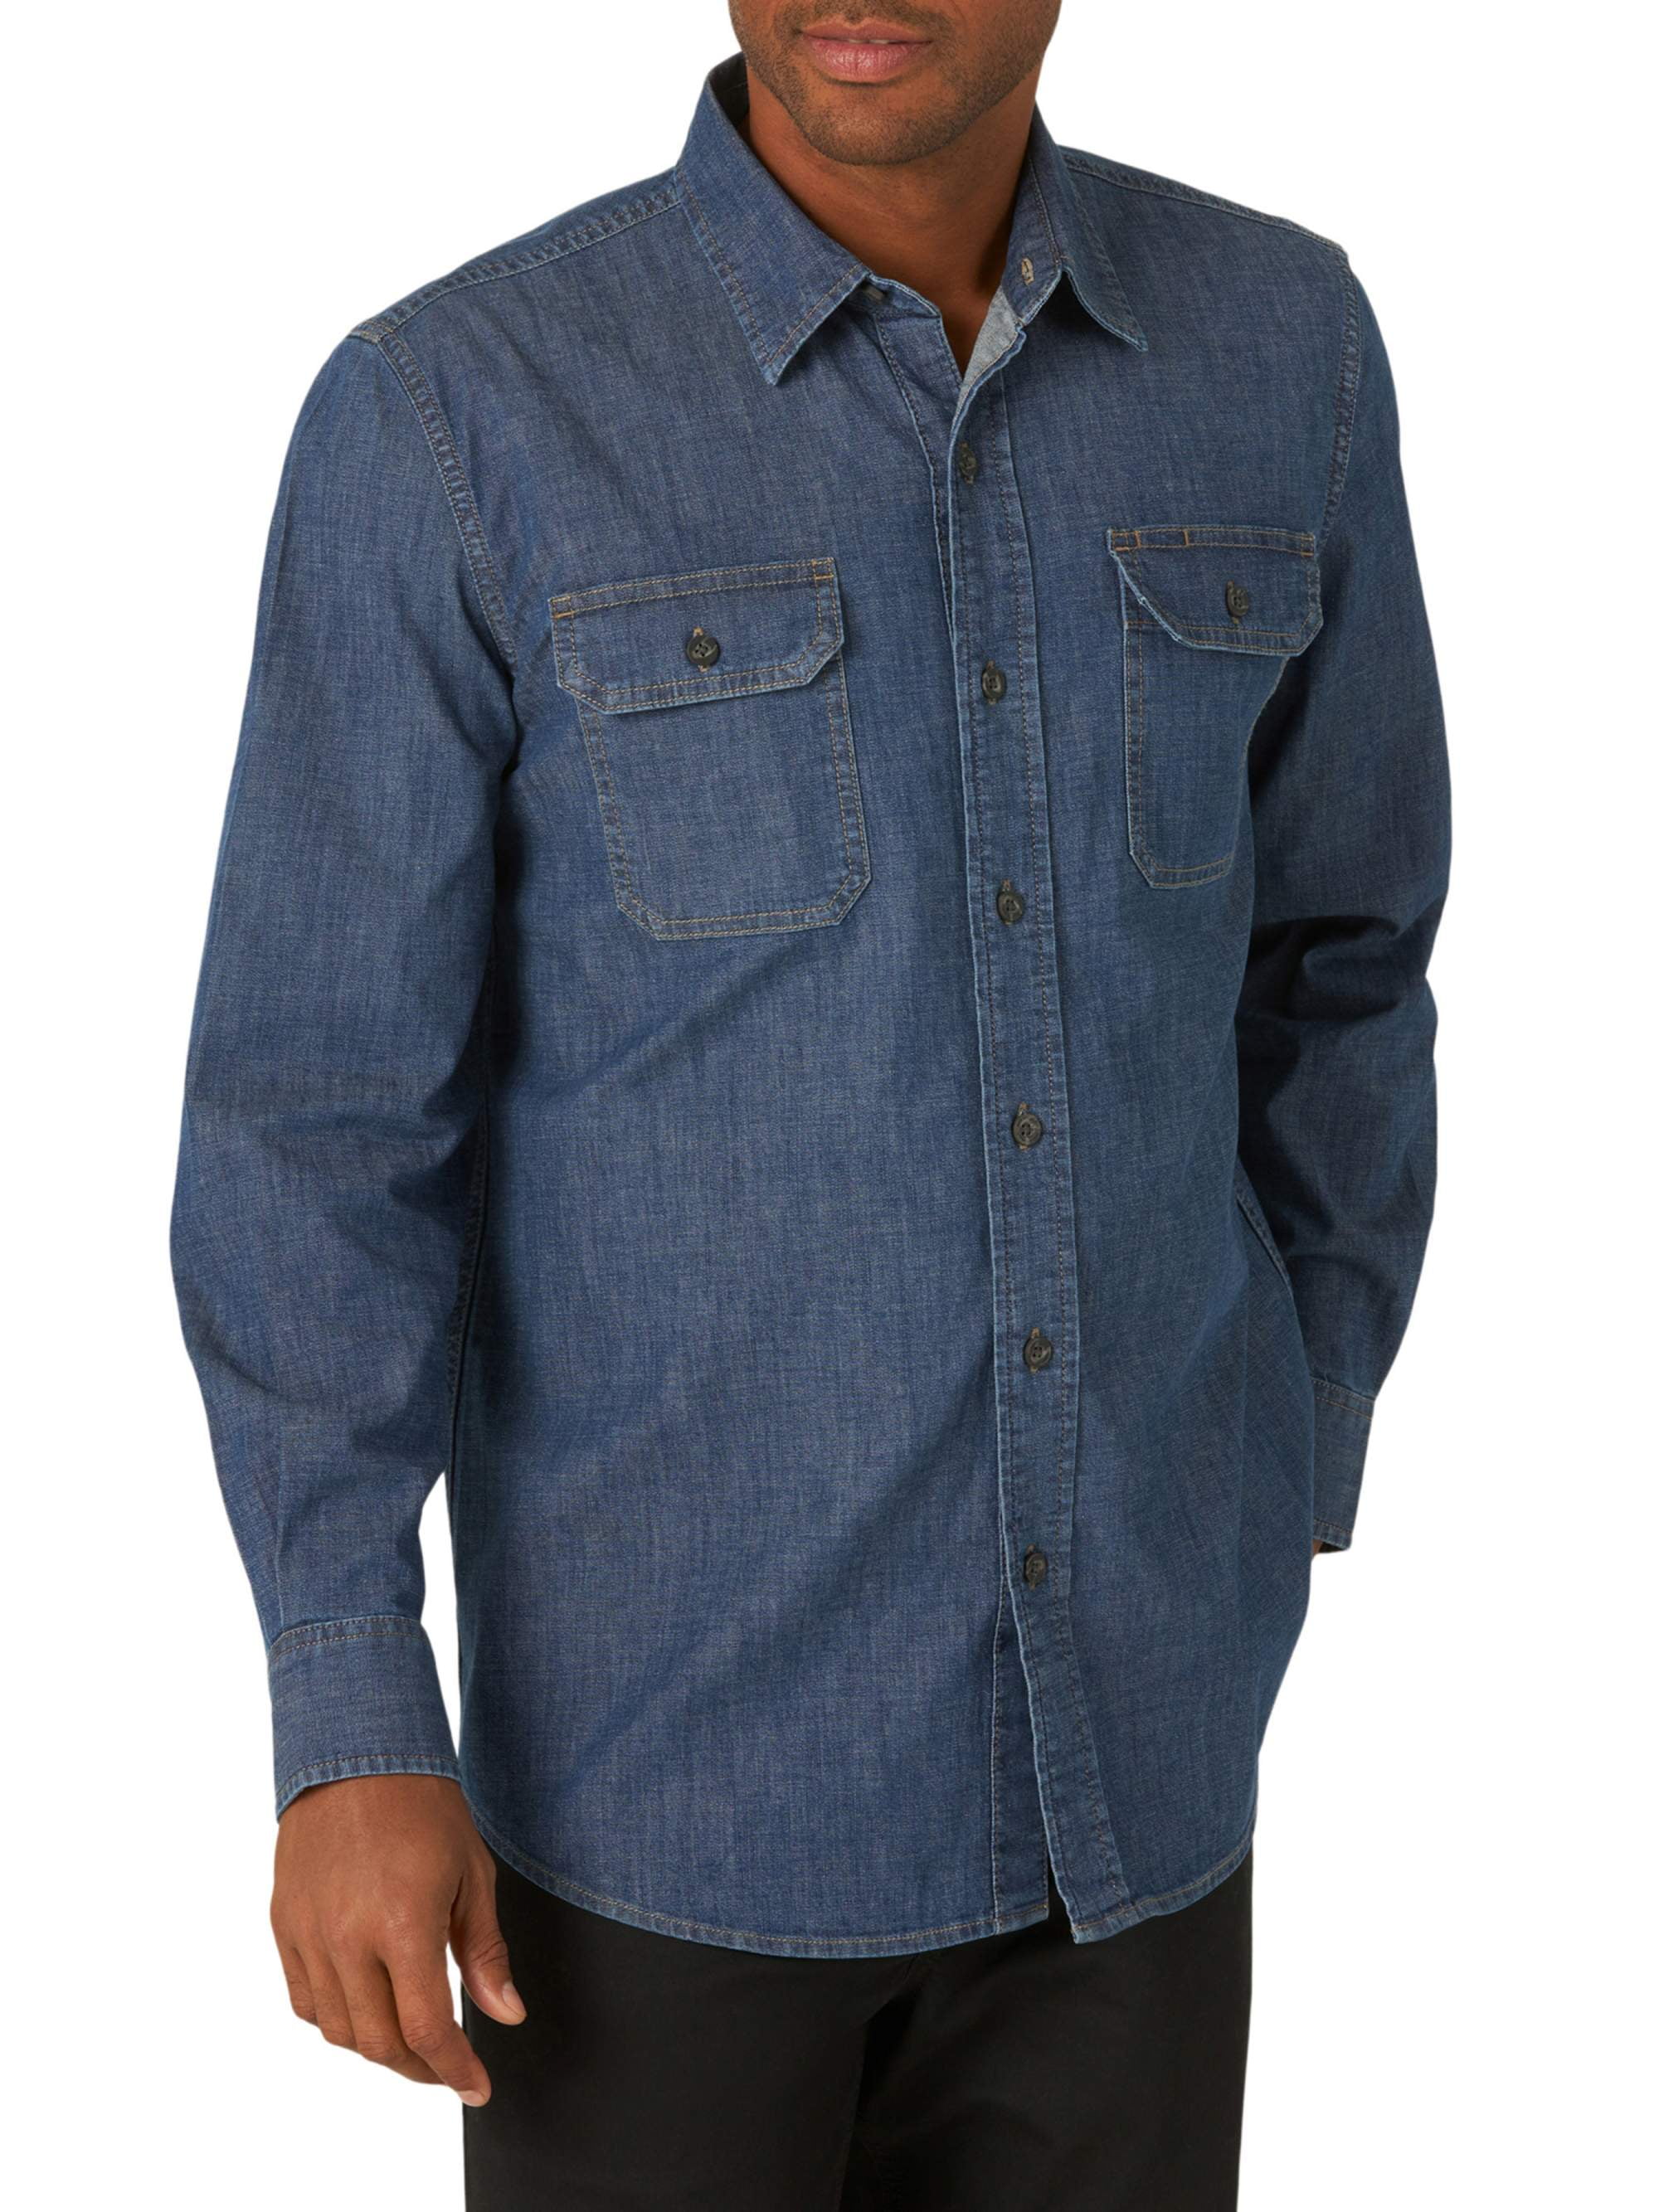 Wrangler - Wrangler Men's Long Sleeve Solid Twill Shirt - Walmart.com ...